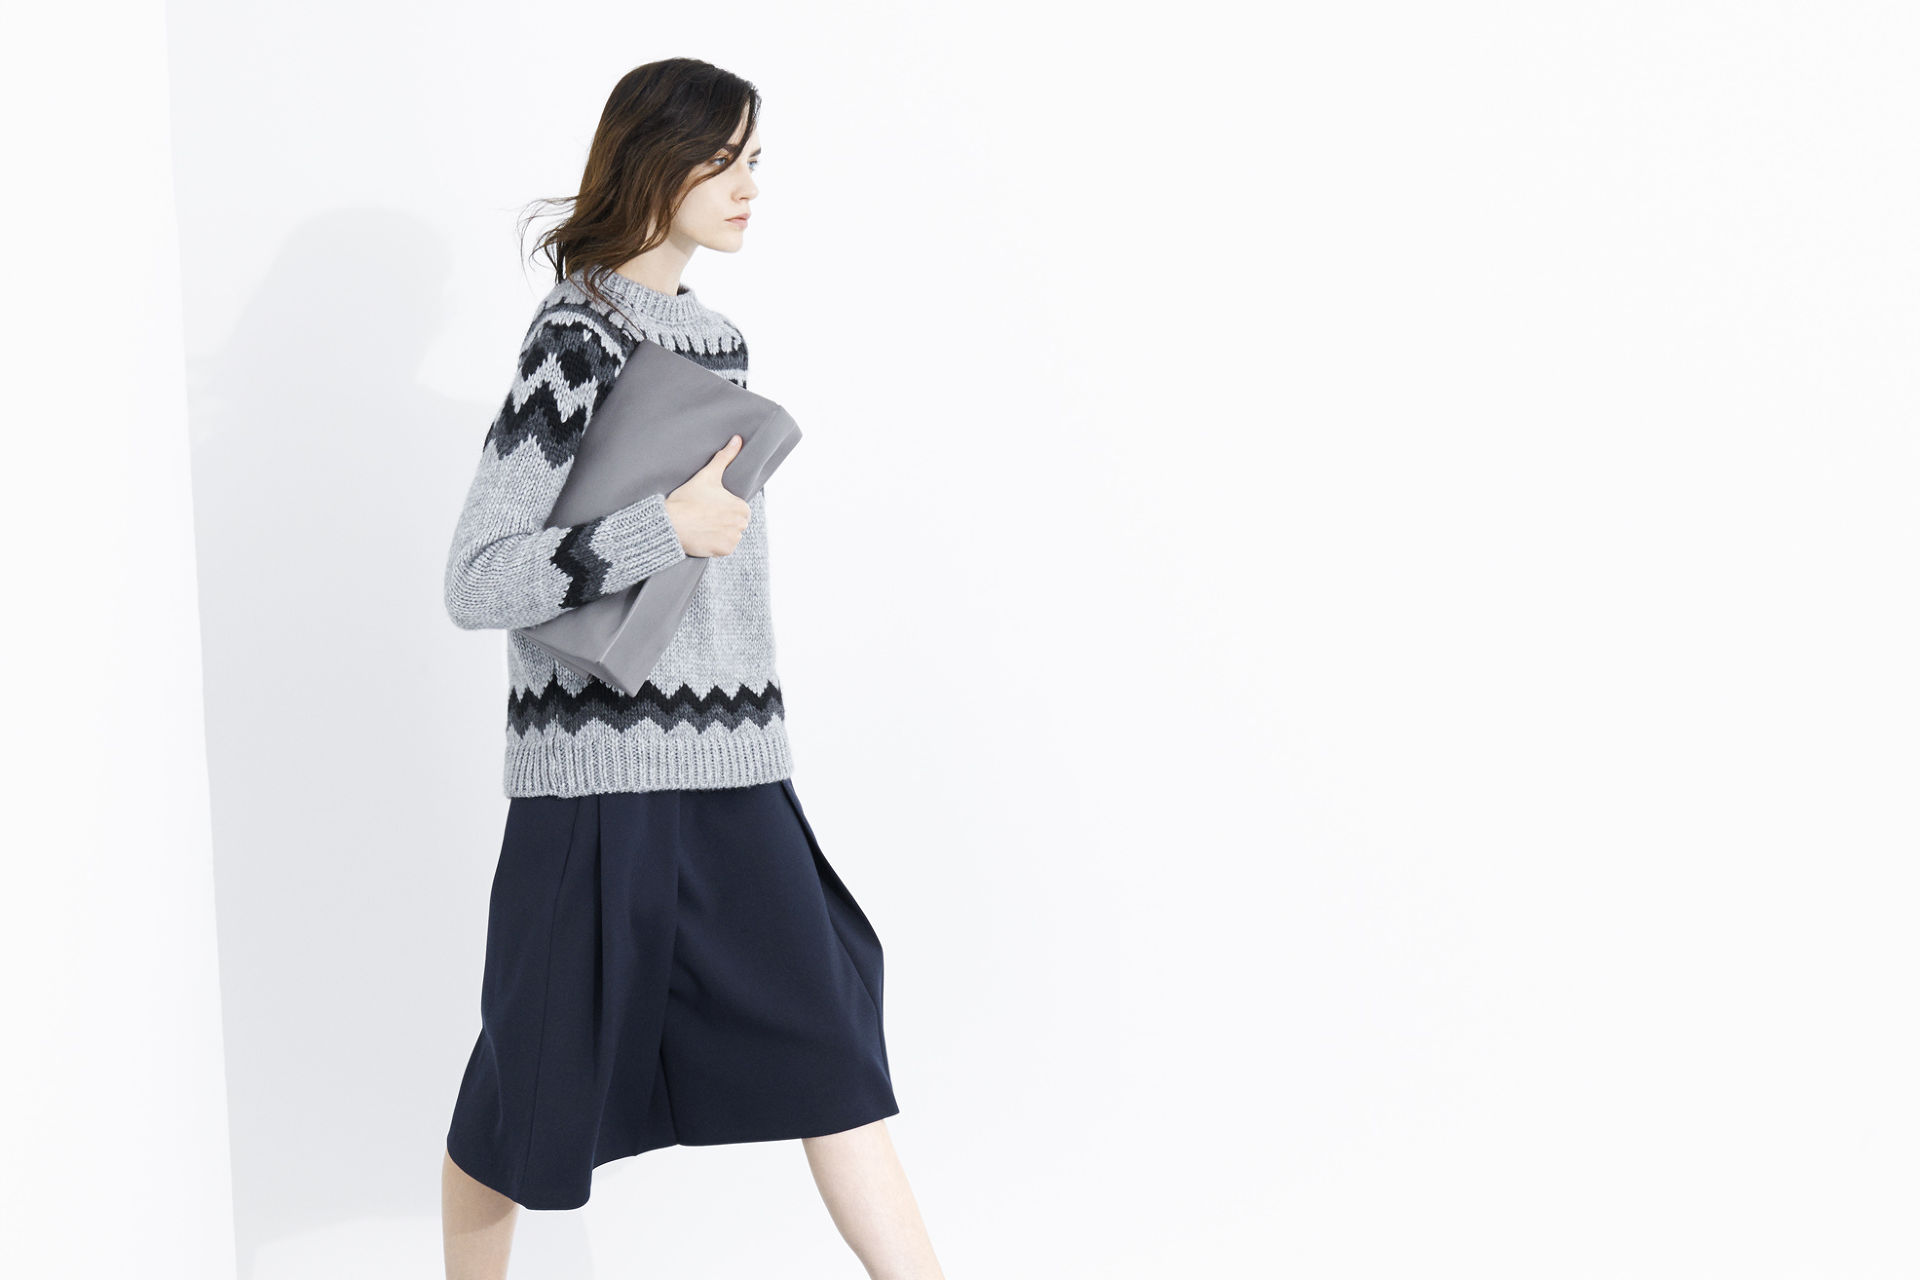 Новая коллекция одежды от Zara: сентябрь 2013 (ФОТО)